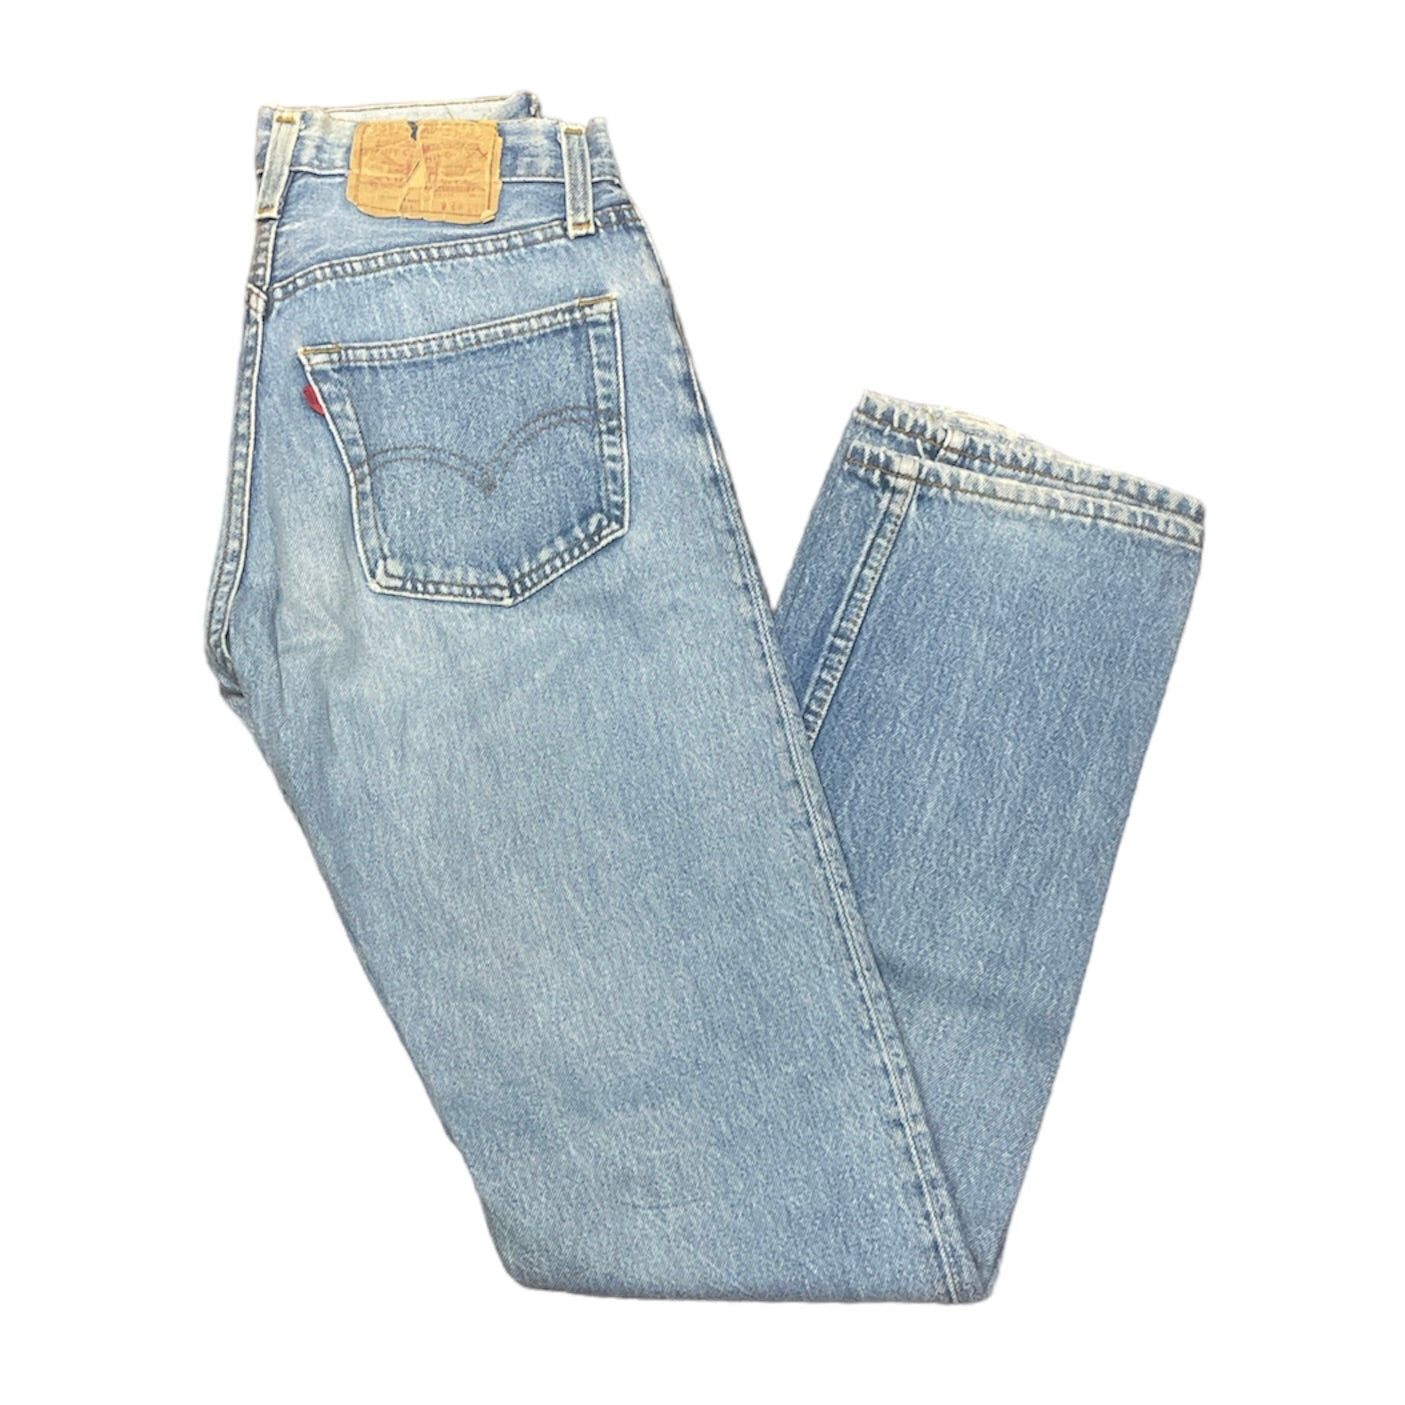 Vintage Levis 501 Blue Jeans (W28/L36)